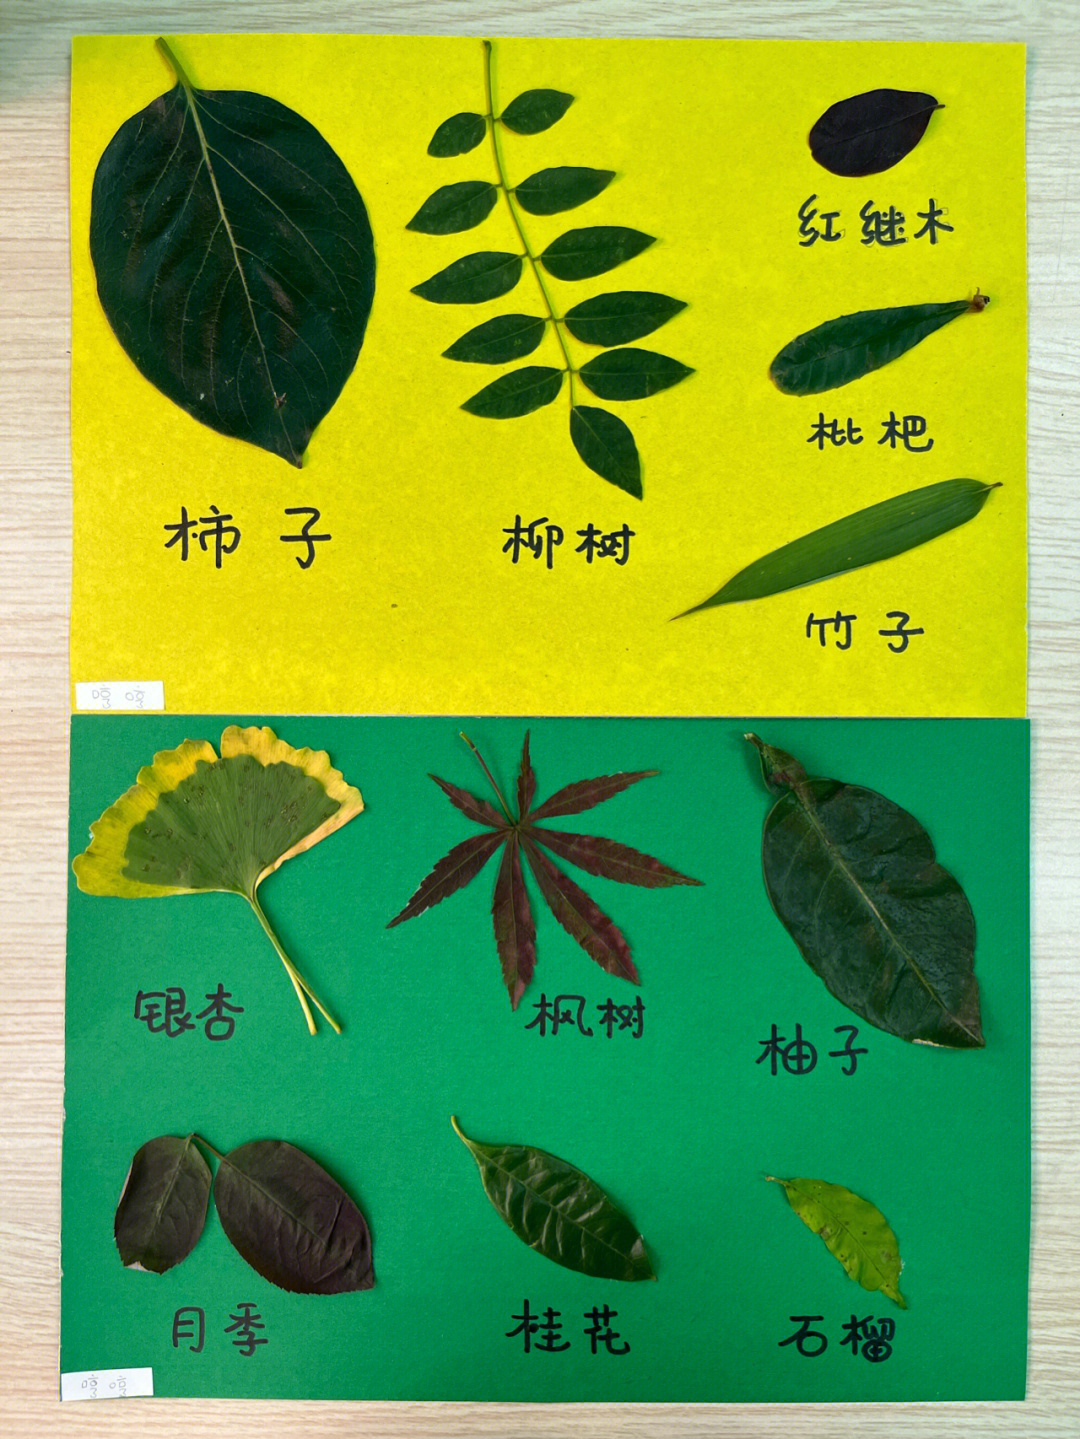 树叶的图片和名字介绍图片